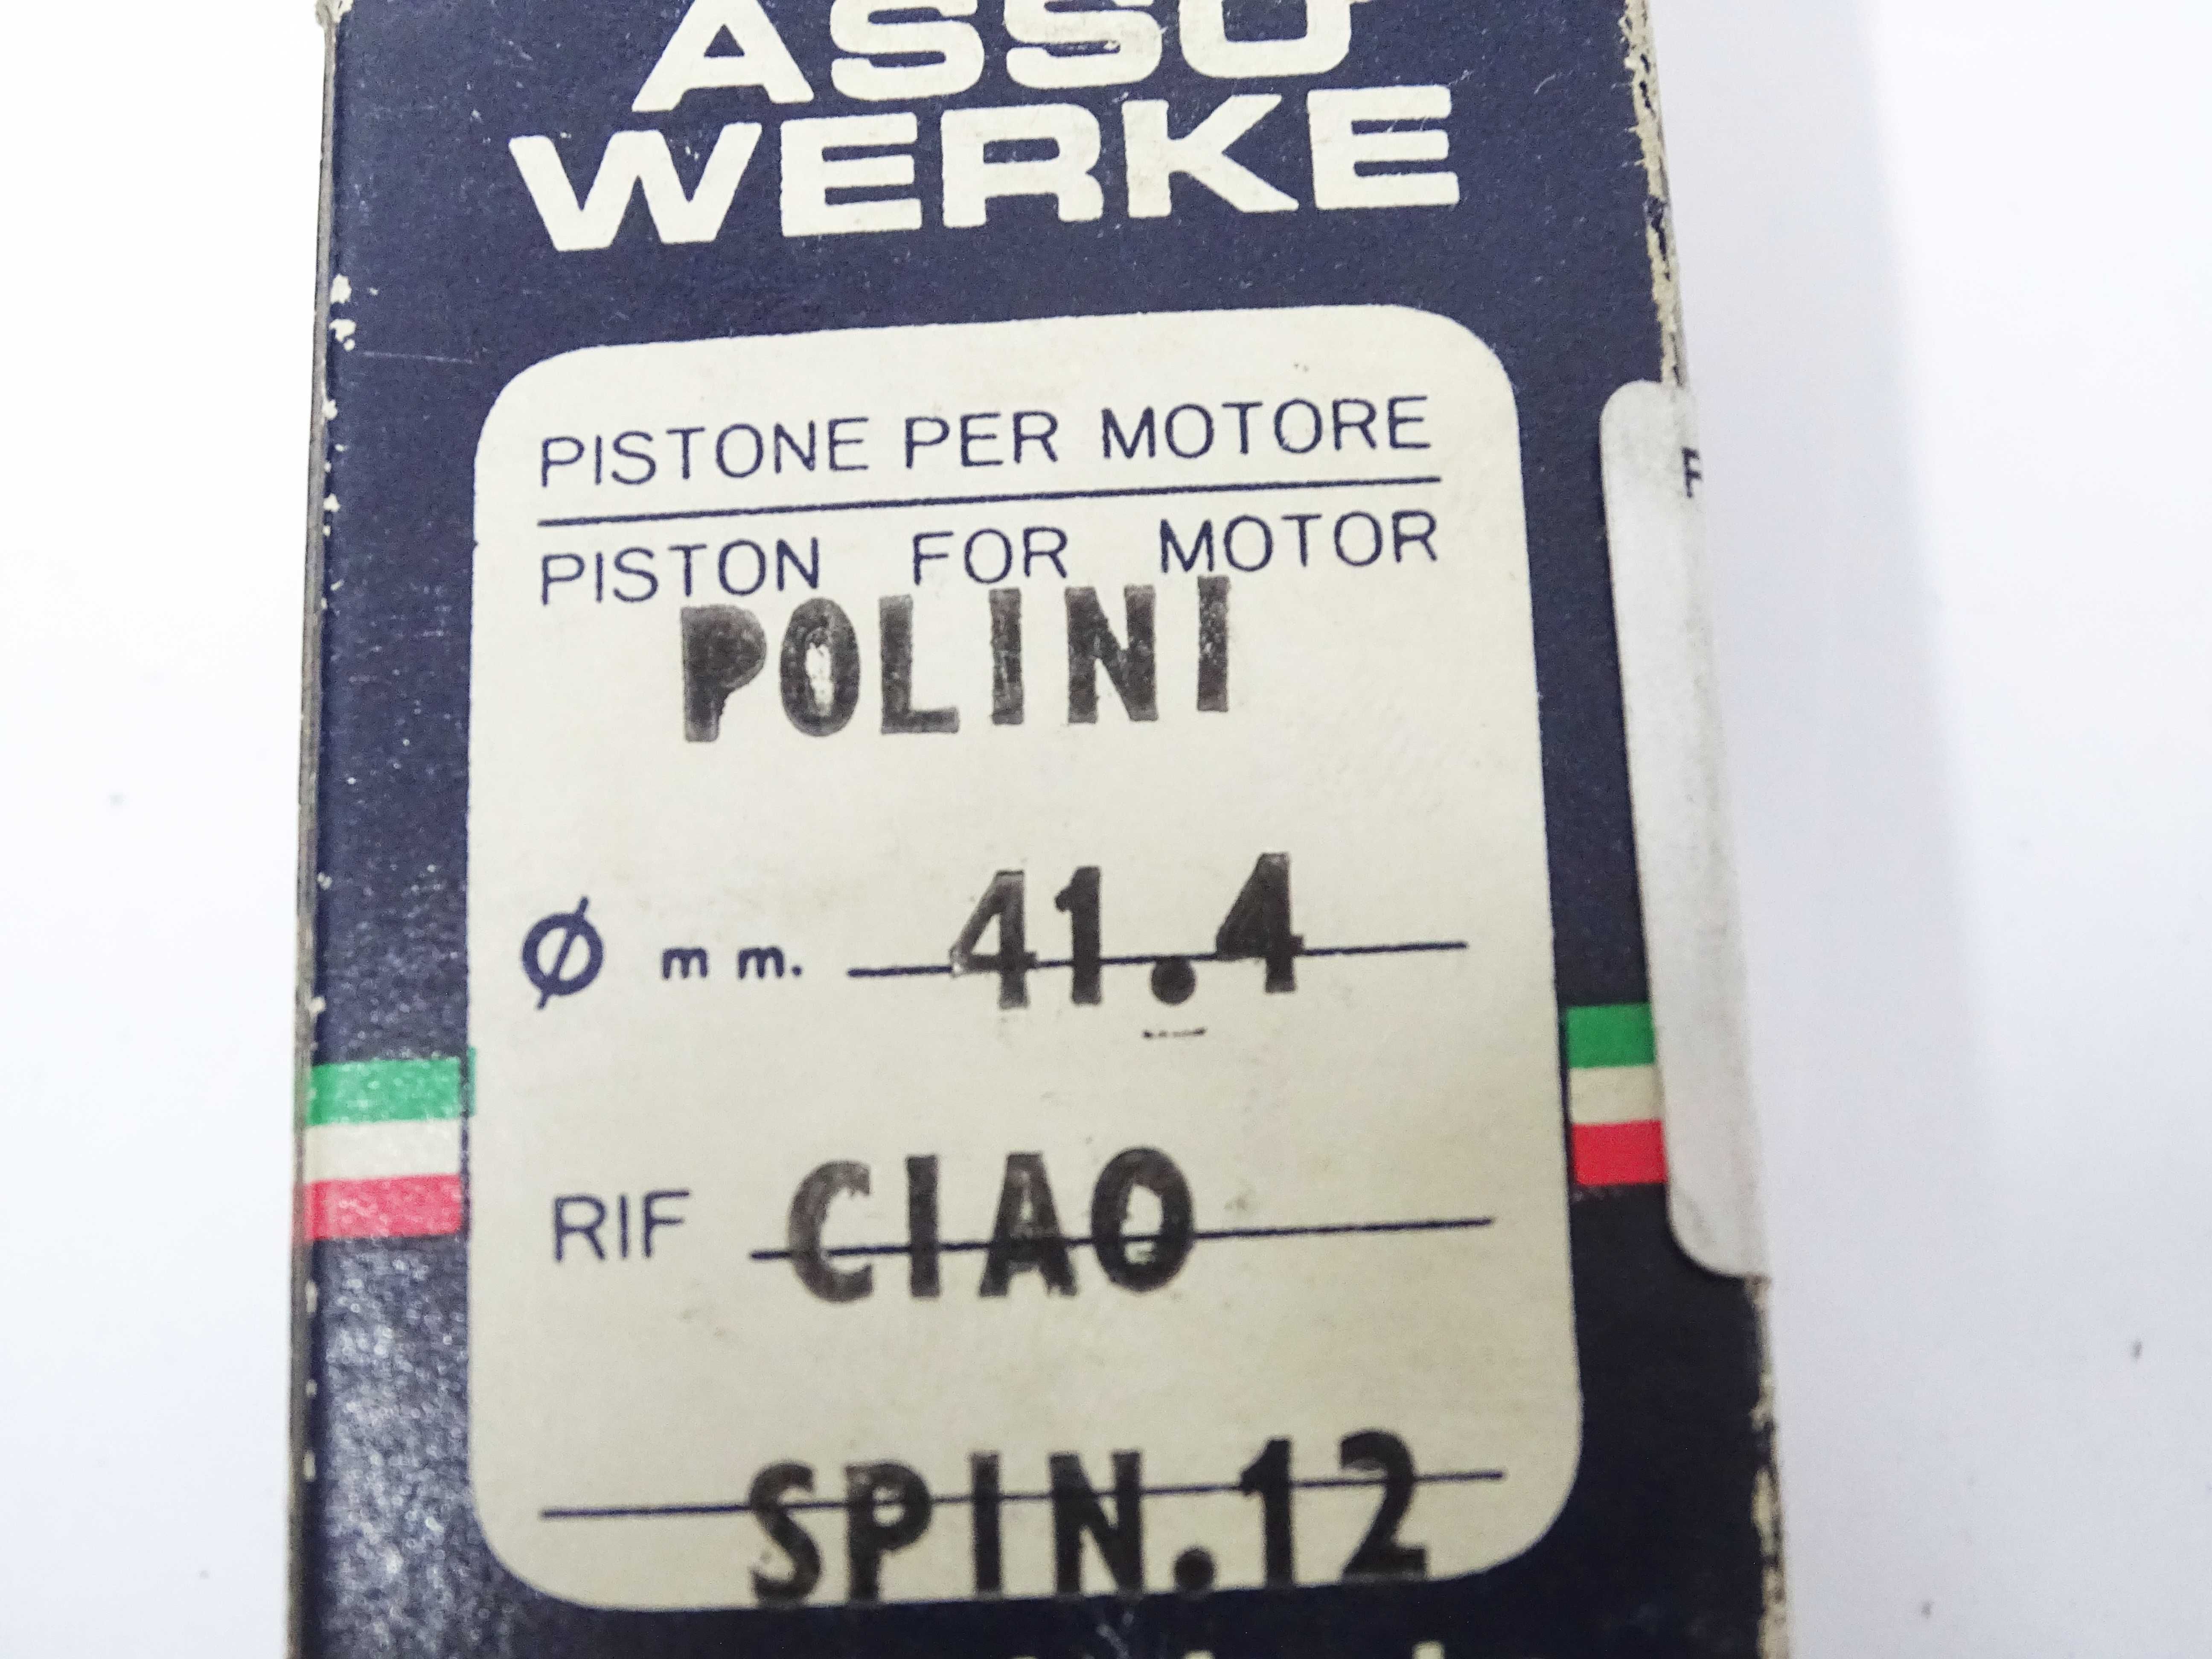 Tłok Asso Polini 41,4 sworzeń 12mm Piaggio Ciao